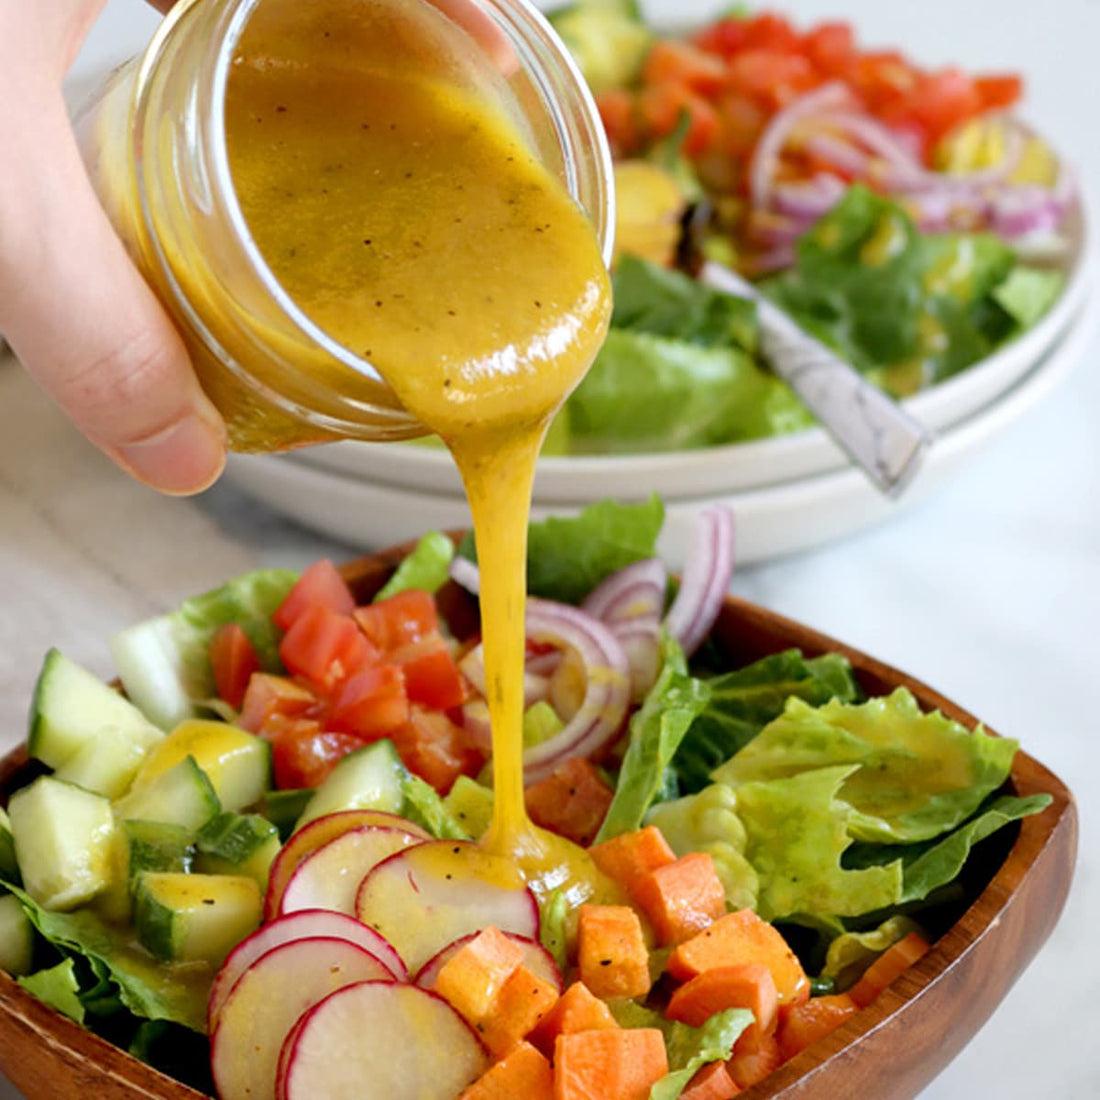 Honey-mustard salad dressing